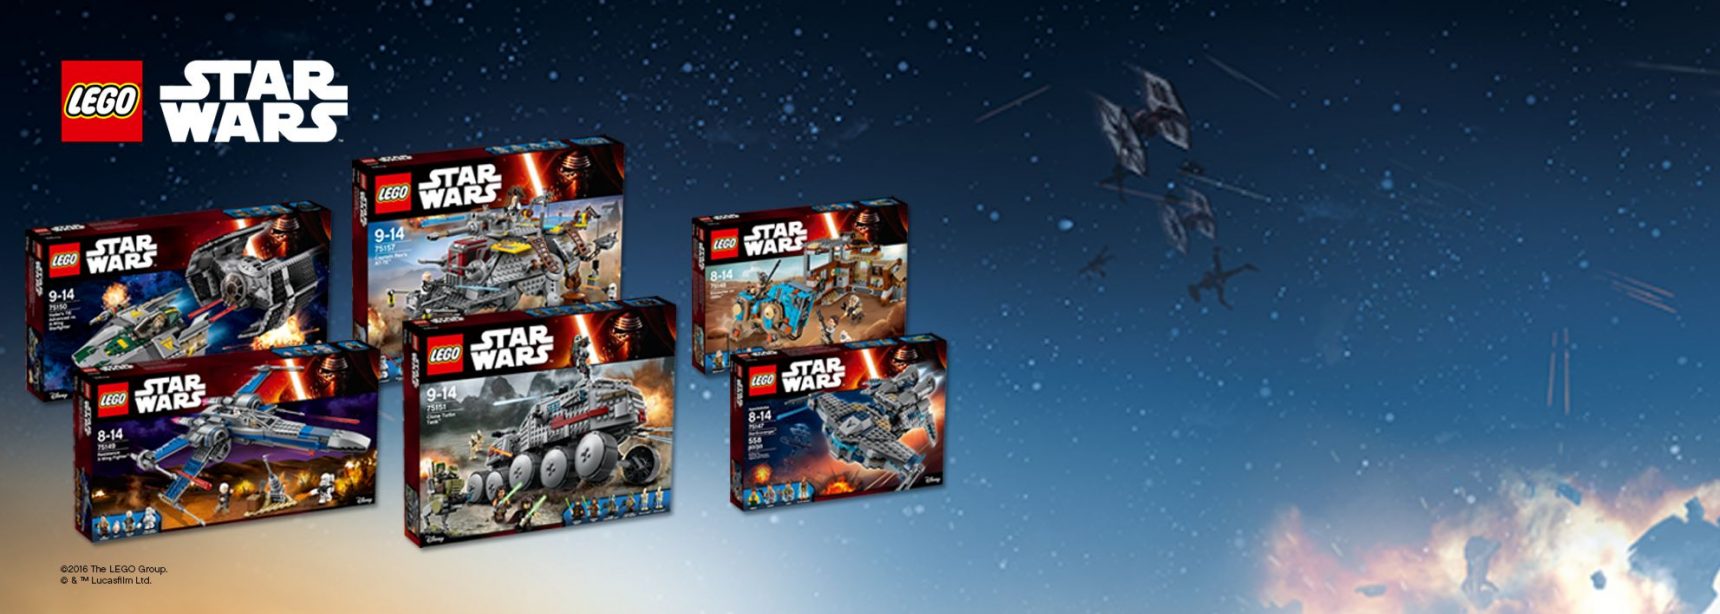 Die neuen LEGO Star Wars 2016 Sets sind ab sofort verfügbar!